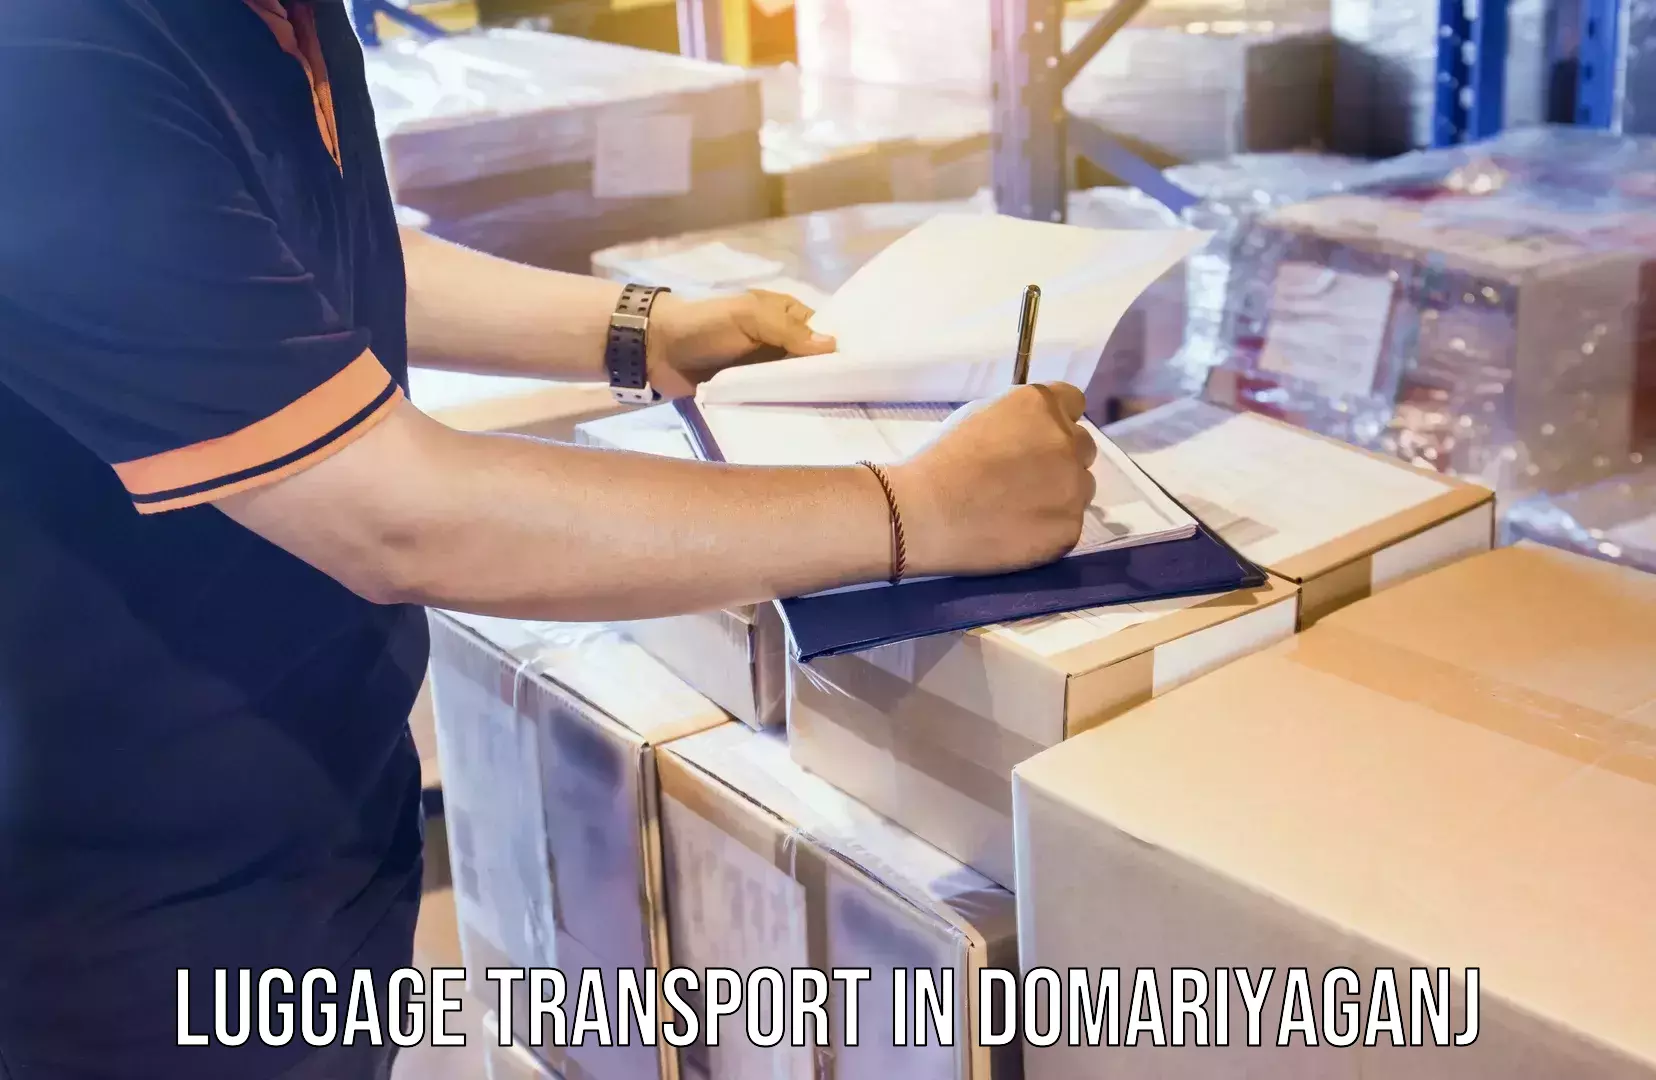 Student luggage transport in Domariyaganj